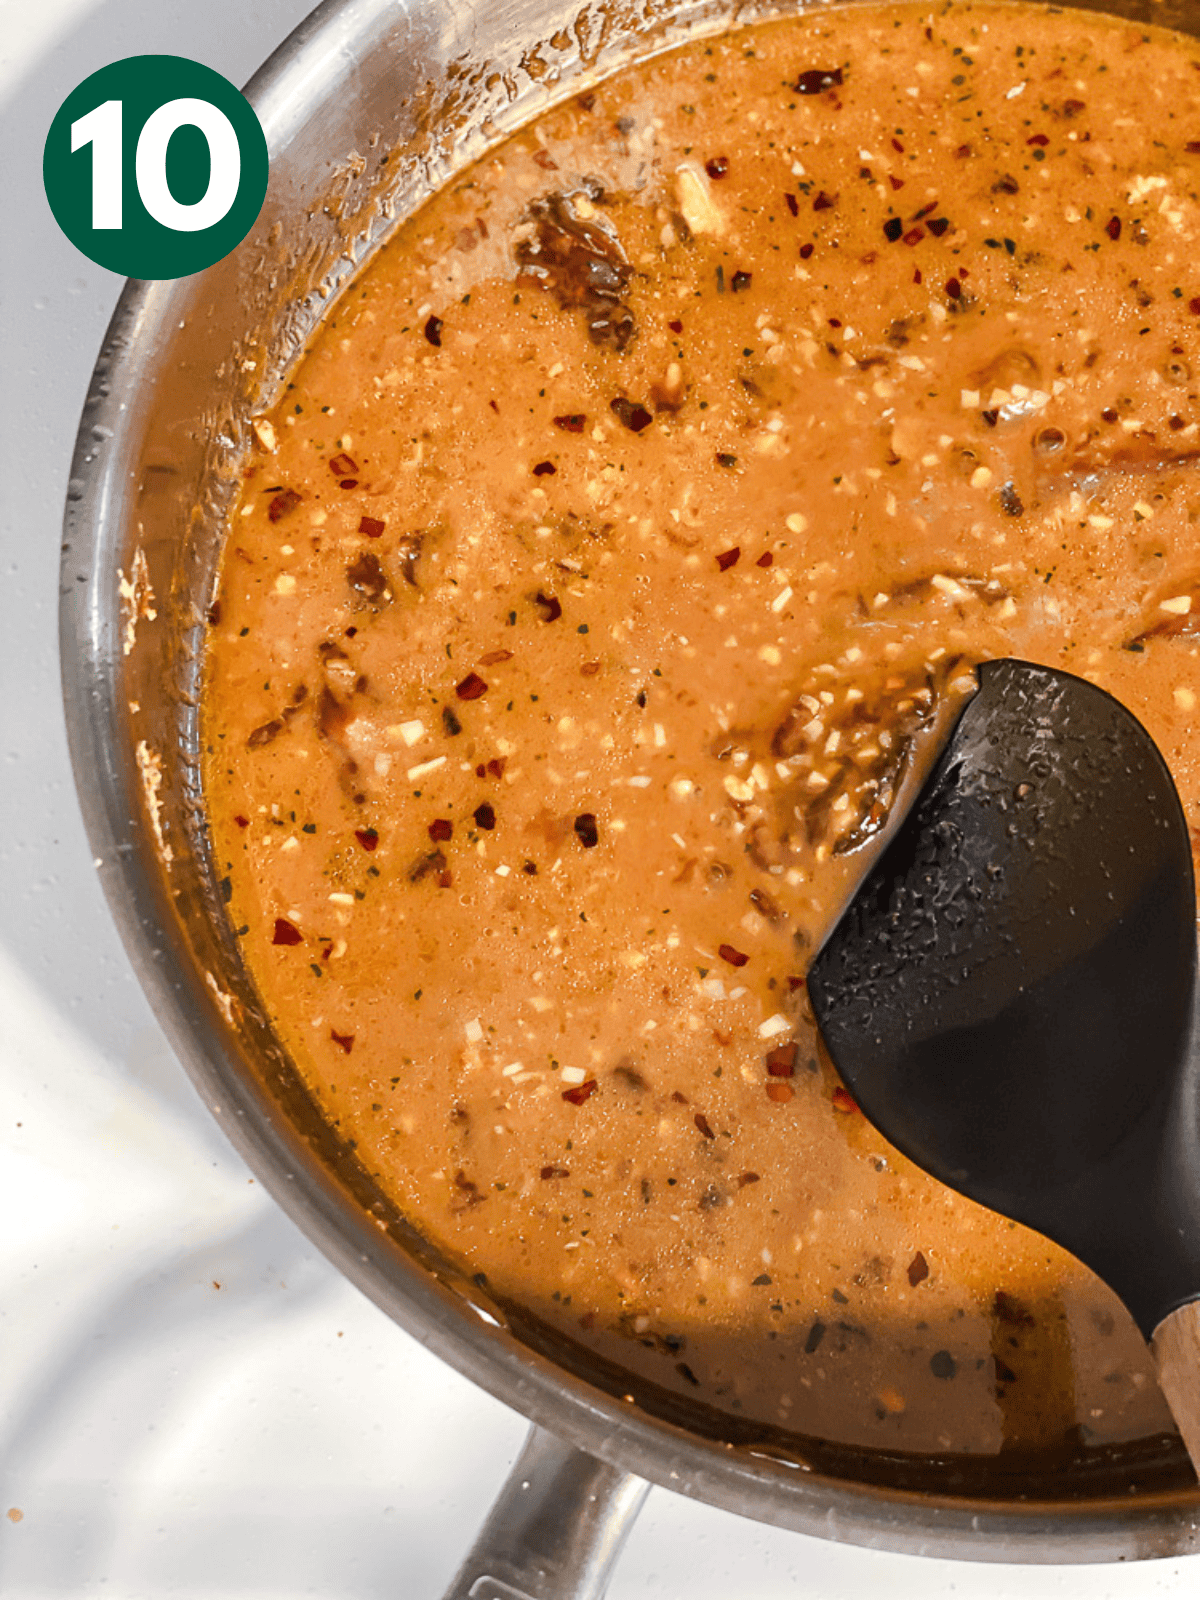 stirring General Tso's sauce in a large metal pan.